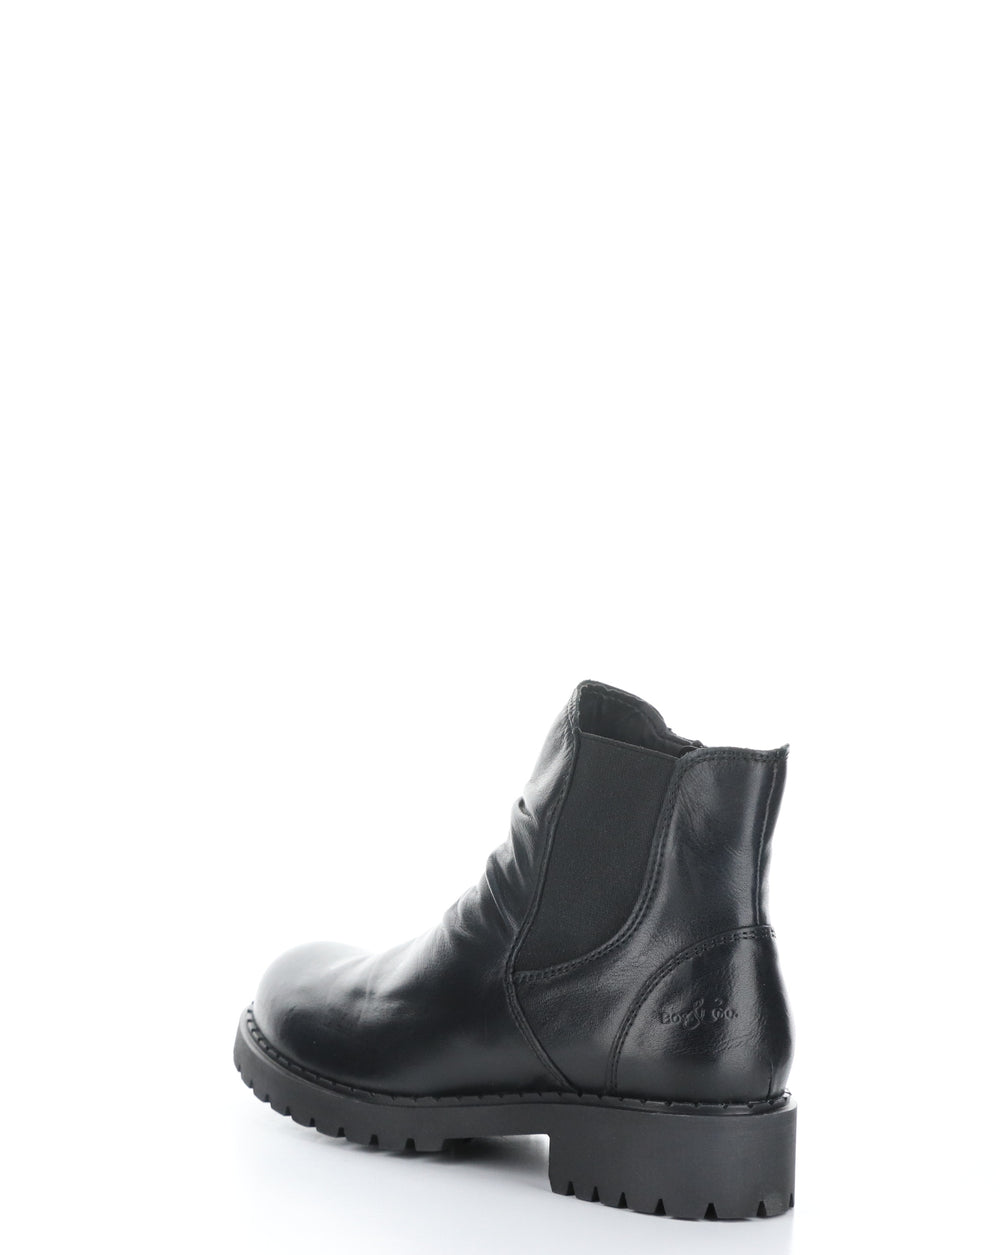 BARB BLACK Elasticated Boots